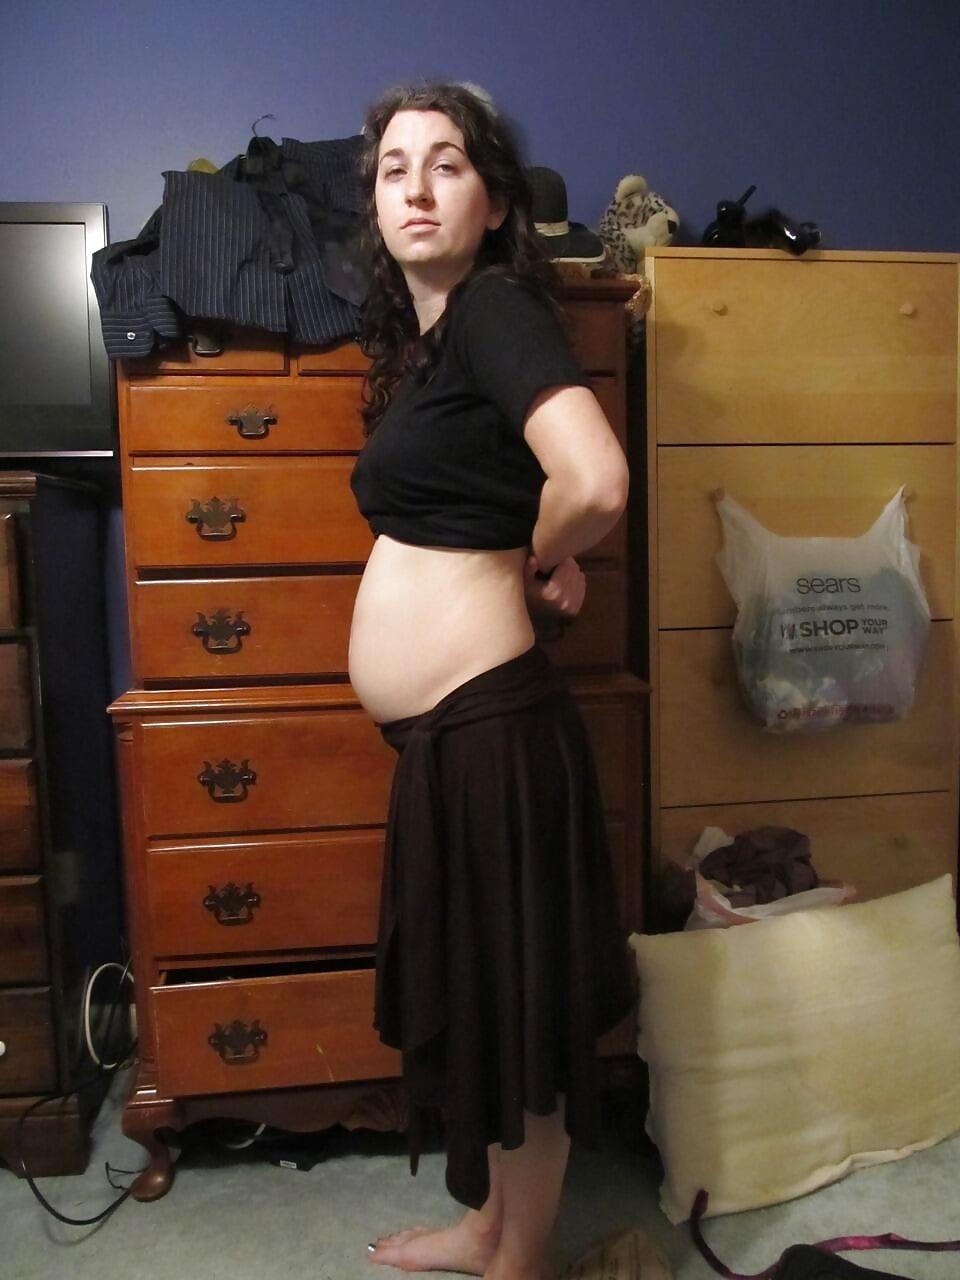 Hot pregnant teen pics-5996